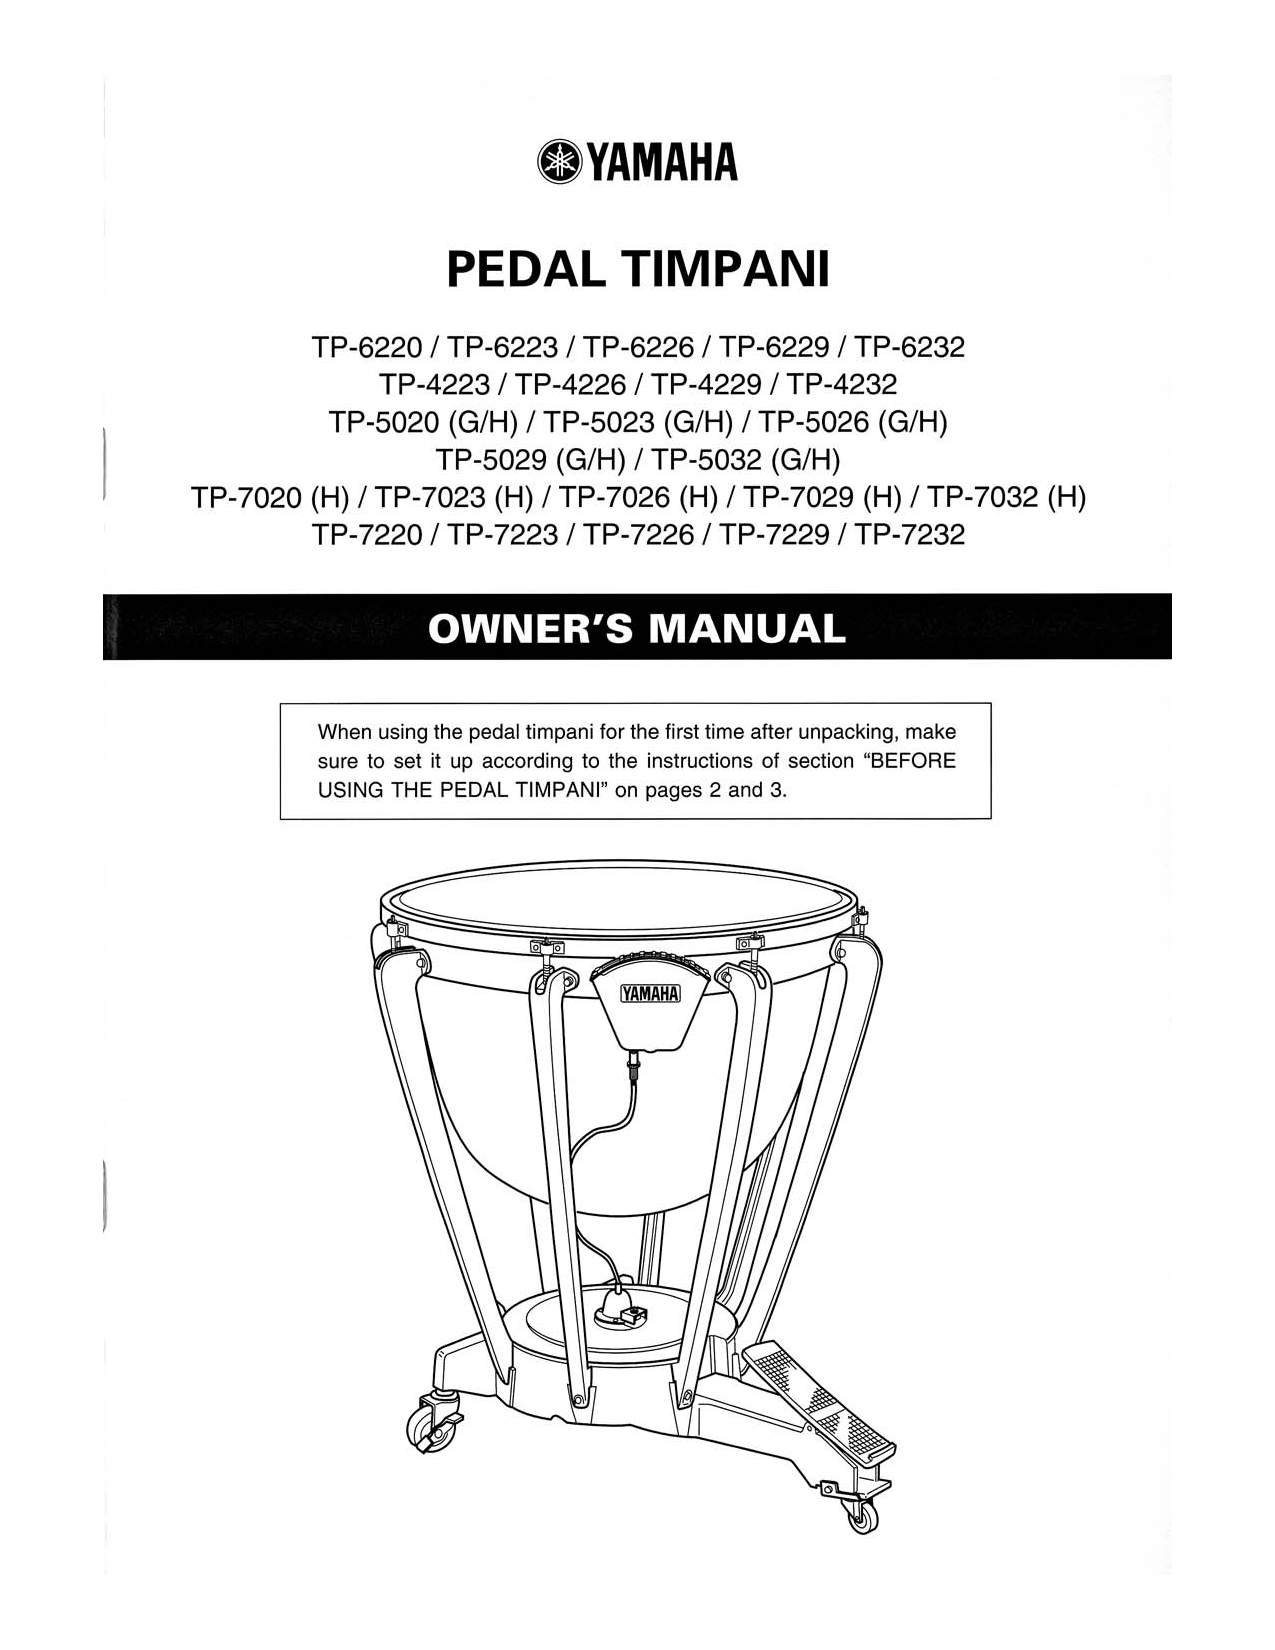 Yamaha TP-7032, TP-5029, TP-7020, TP-5032, TP-7029 User Manual